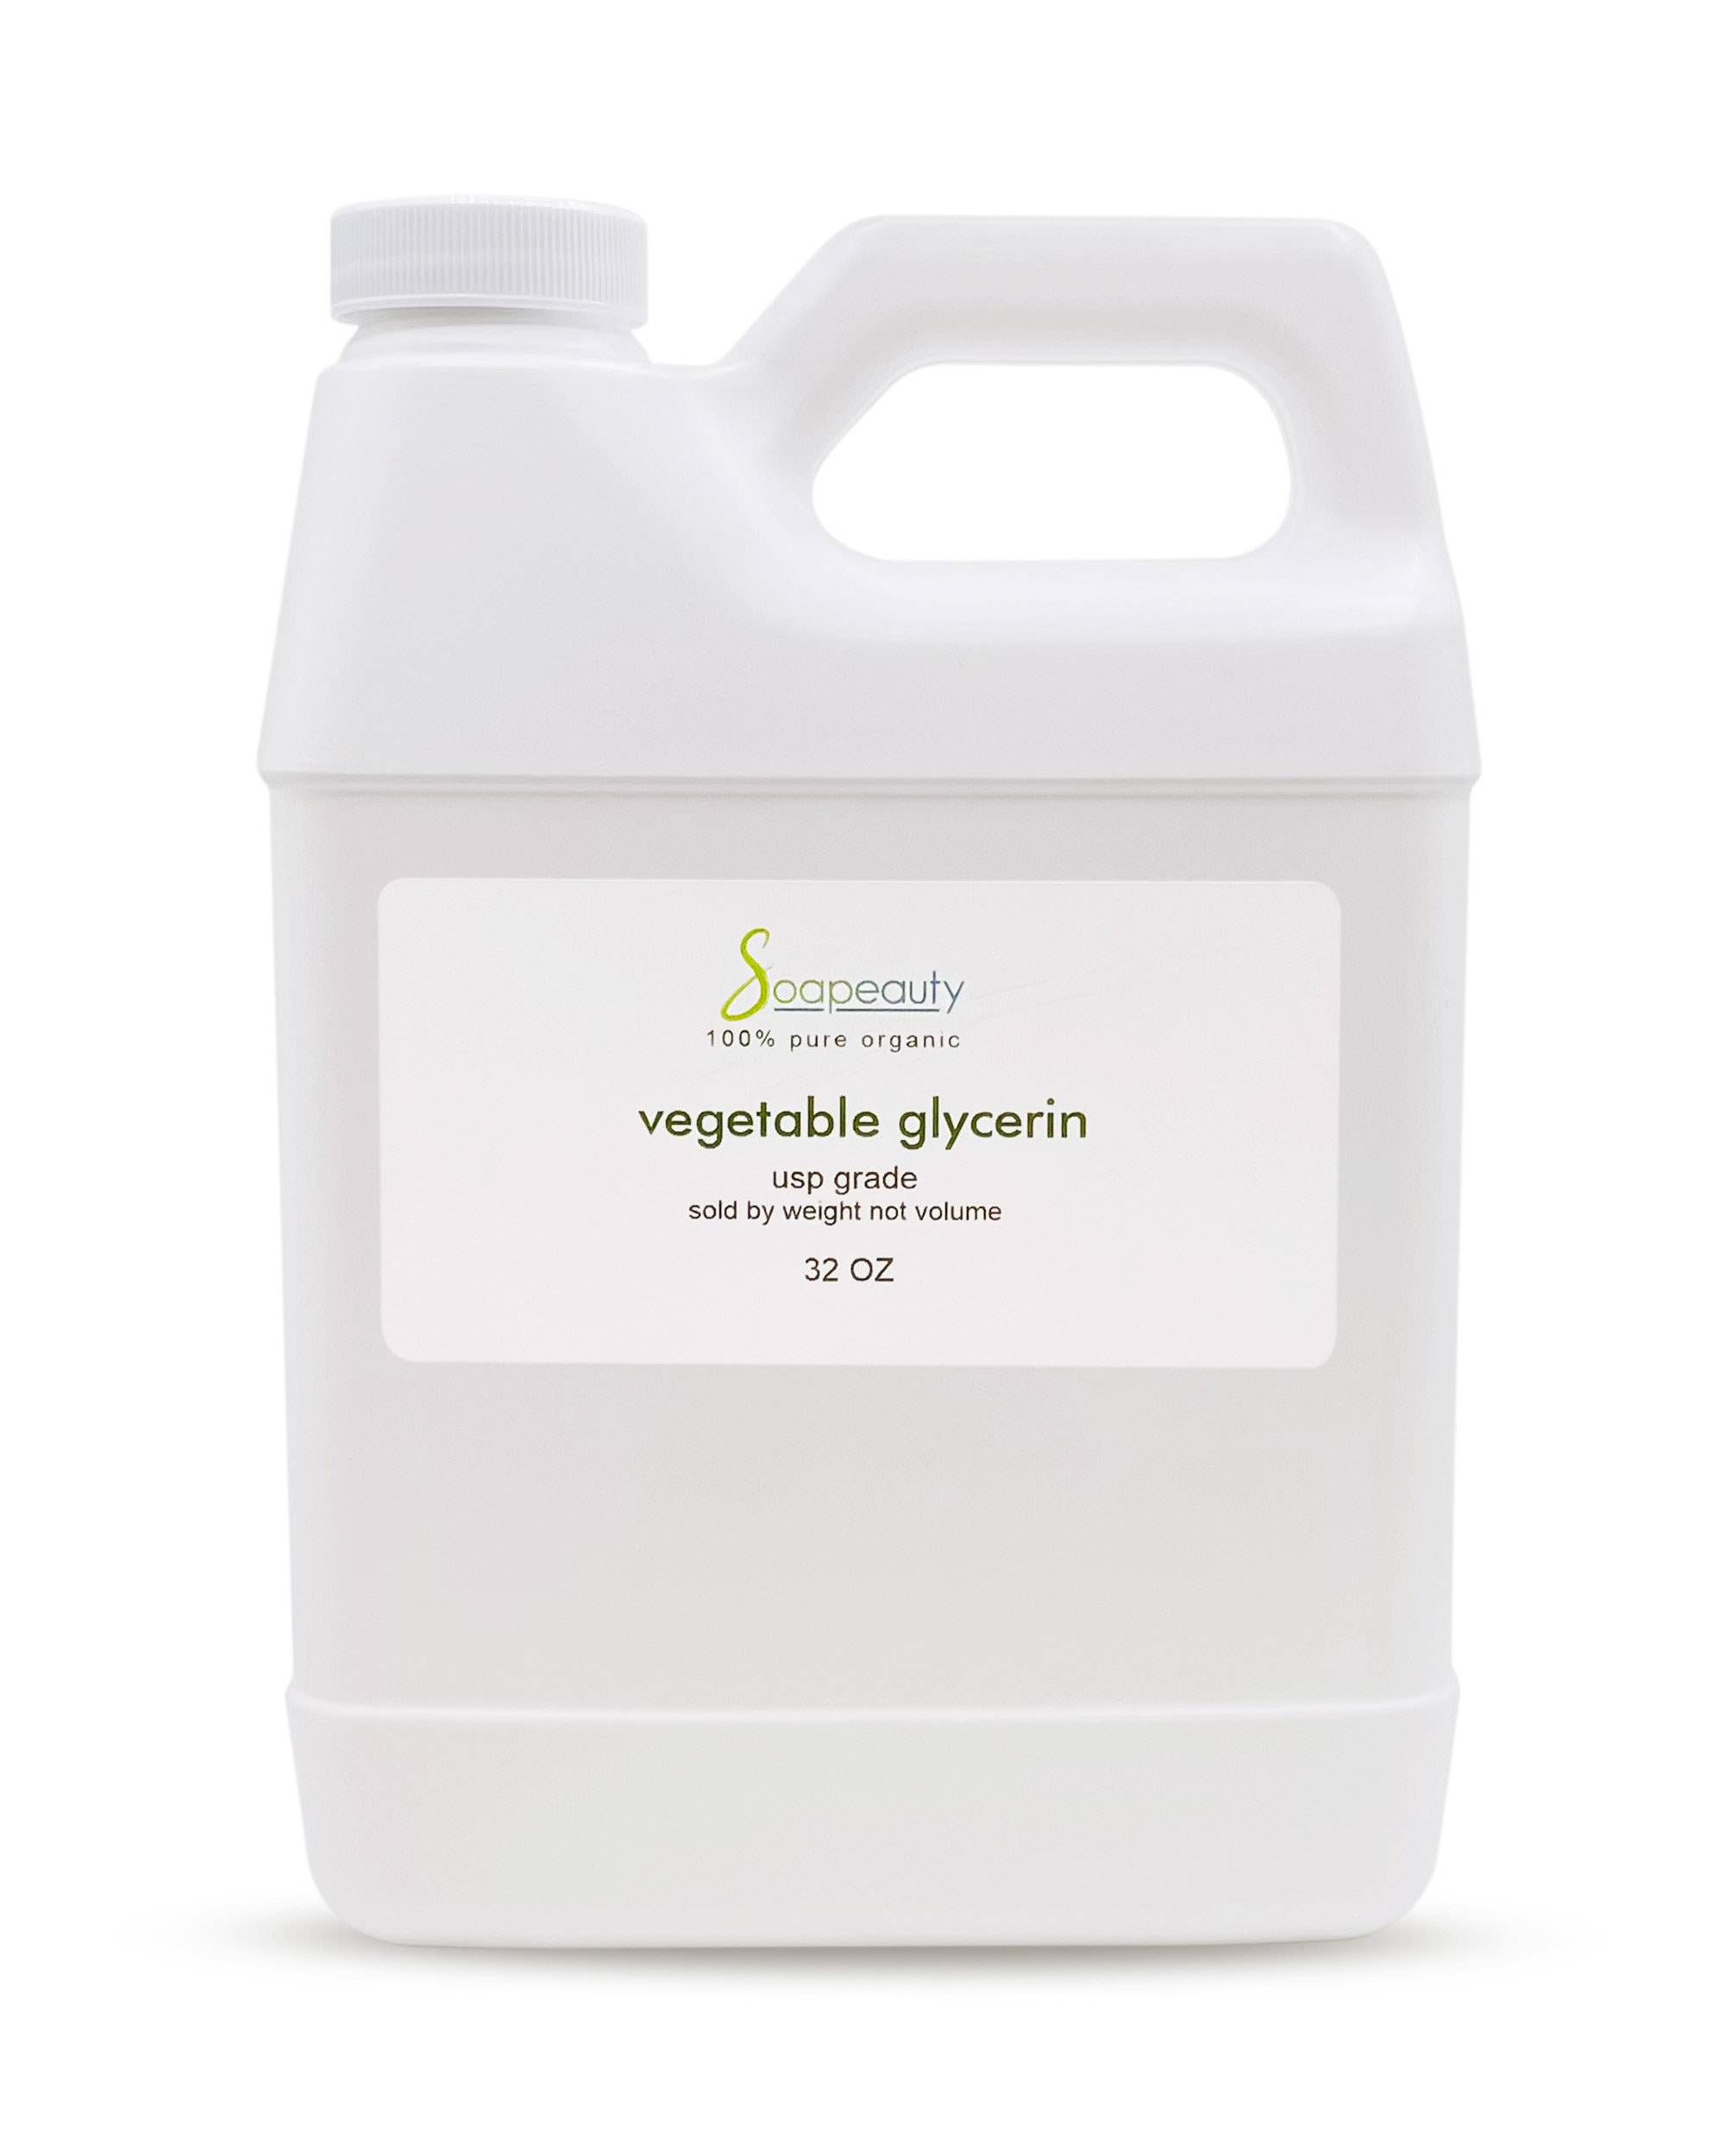 Glycérine végétale bio - 100% pure et naturelle - Formule beauté